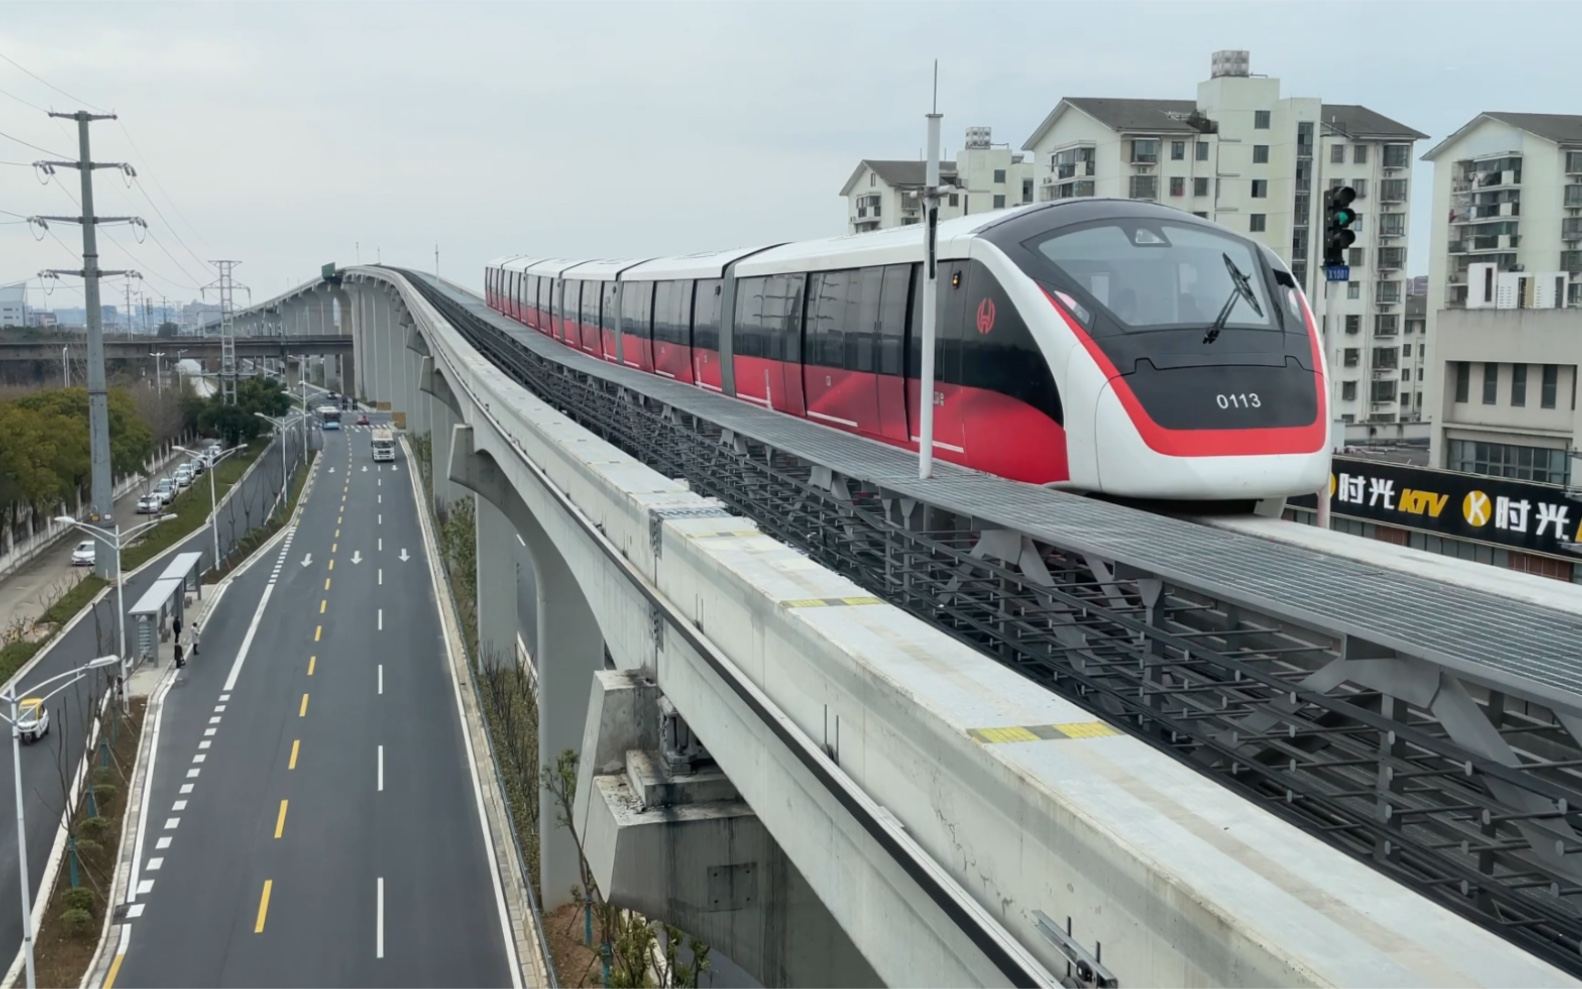 芜湖单轨1号线港一路出站加速通过淮南铁路跨线桥